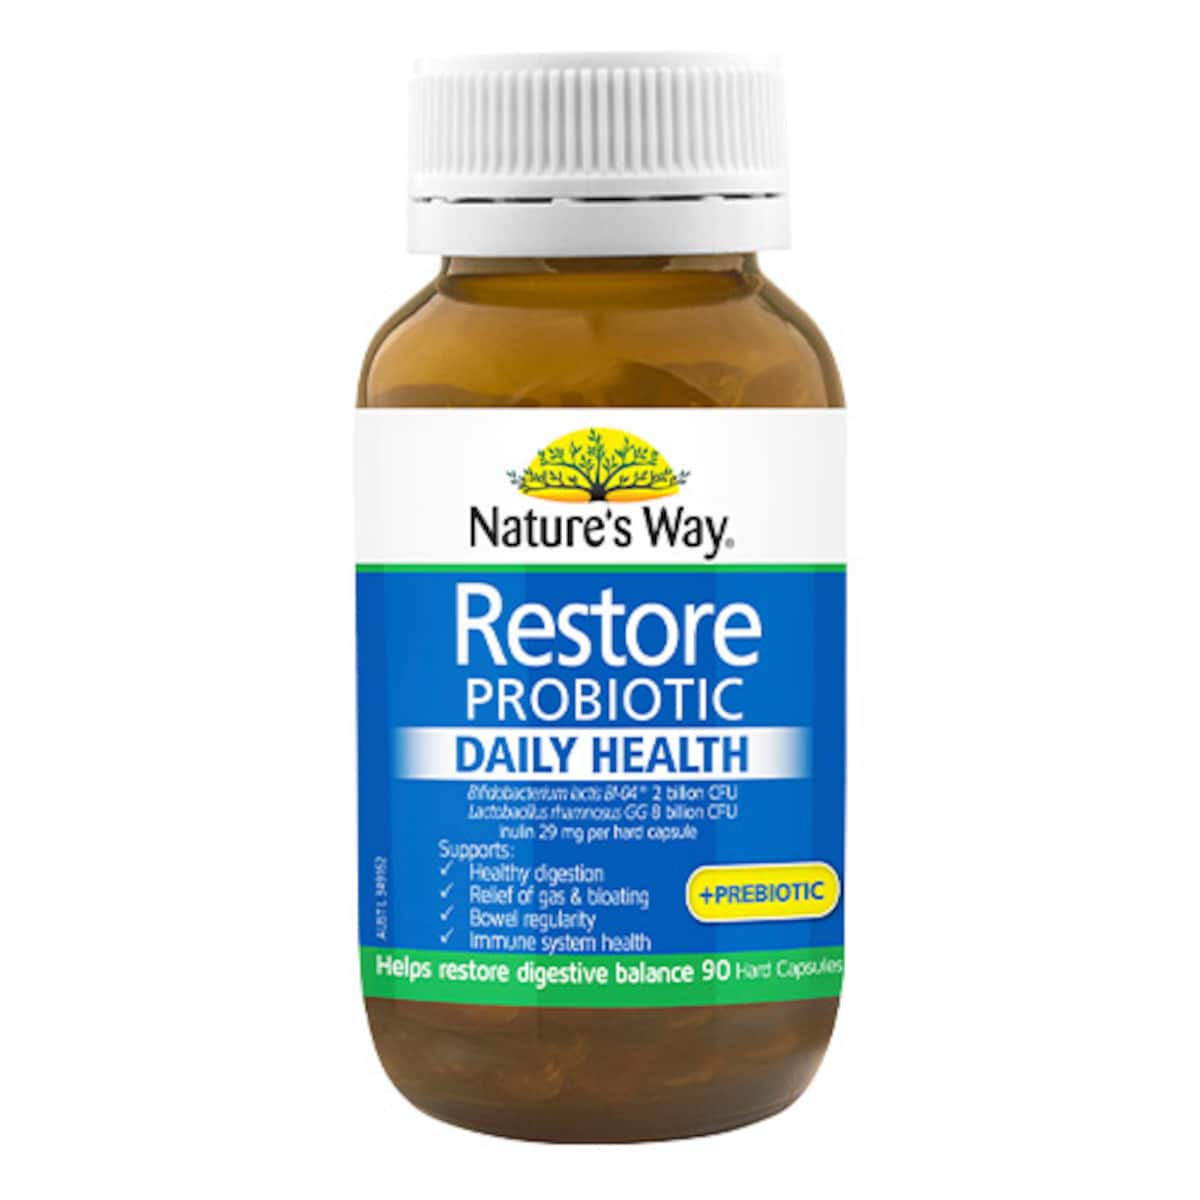 Natures Way Restore Probiotic Daily Health + Prebiotic 90 Capsules Australia